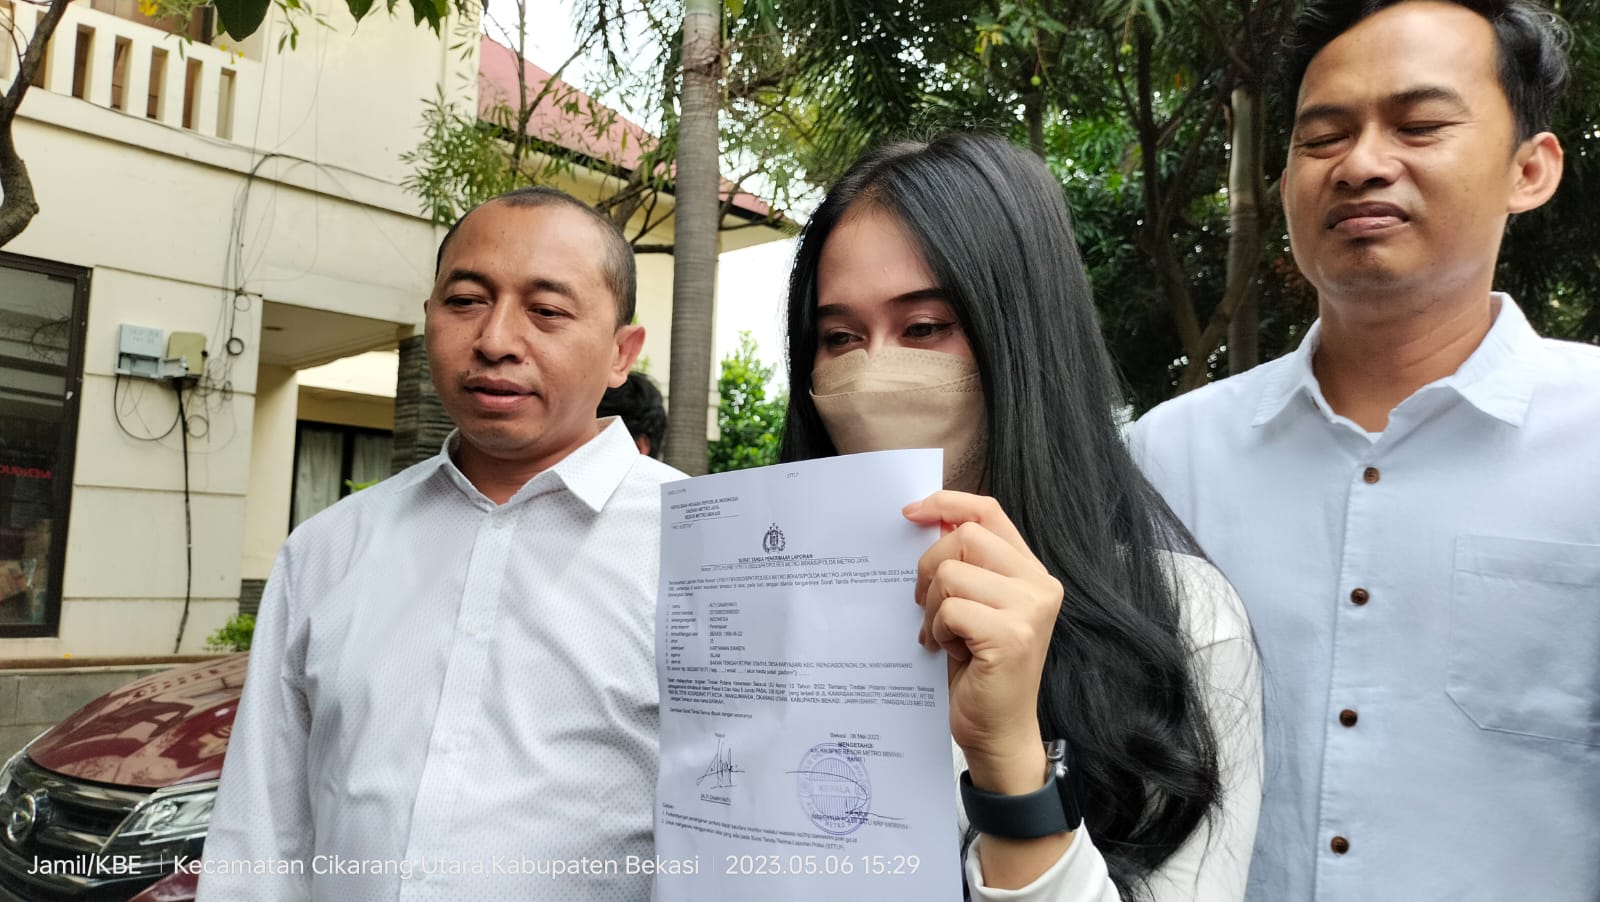 Akhirnya DPRD Bekasi Respon Kasus Viral, Dugaan 'Staycation' Syarat Perpanjang Kontrak Kerja di Cikarang 